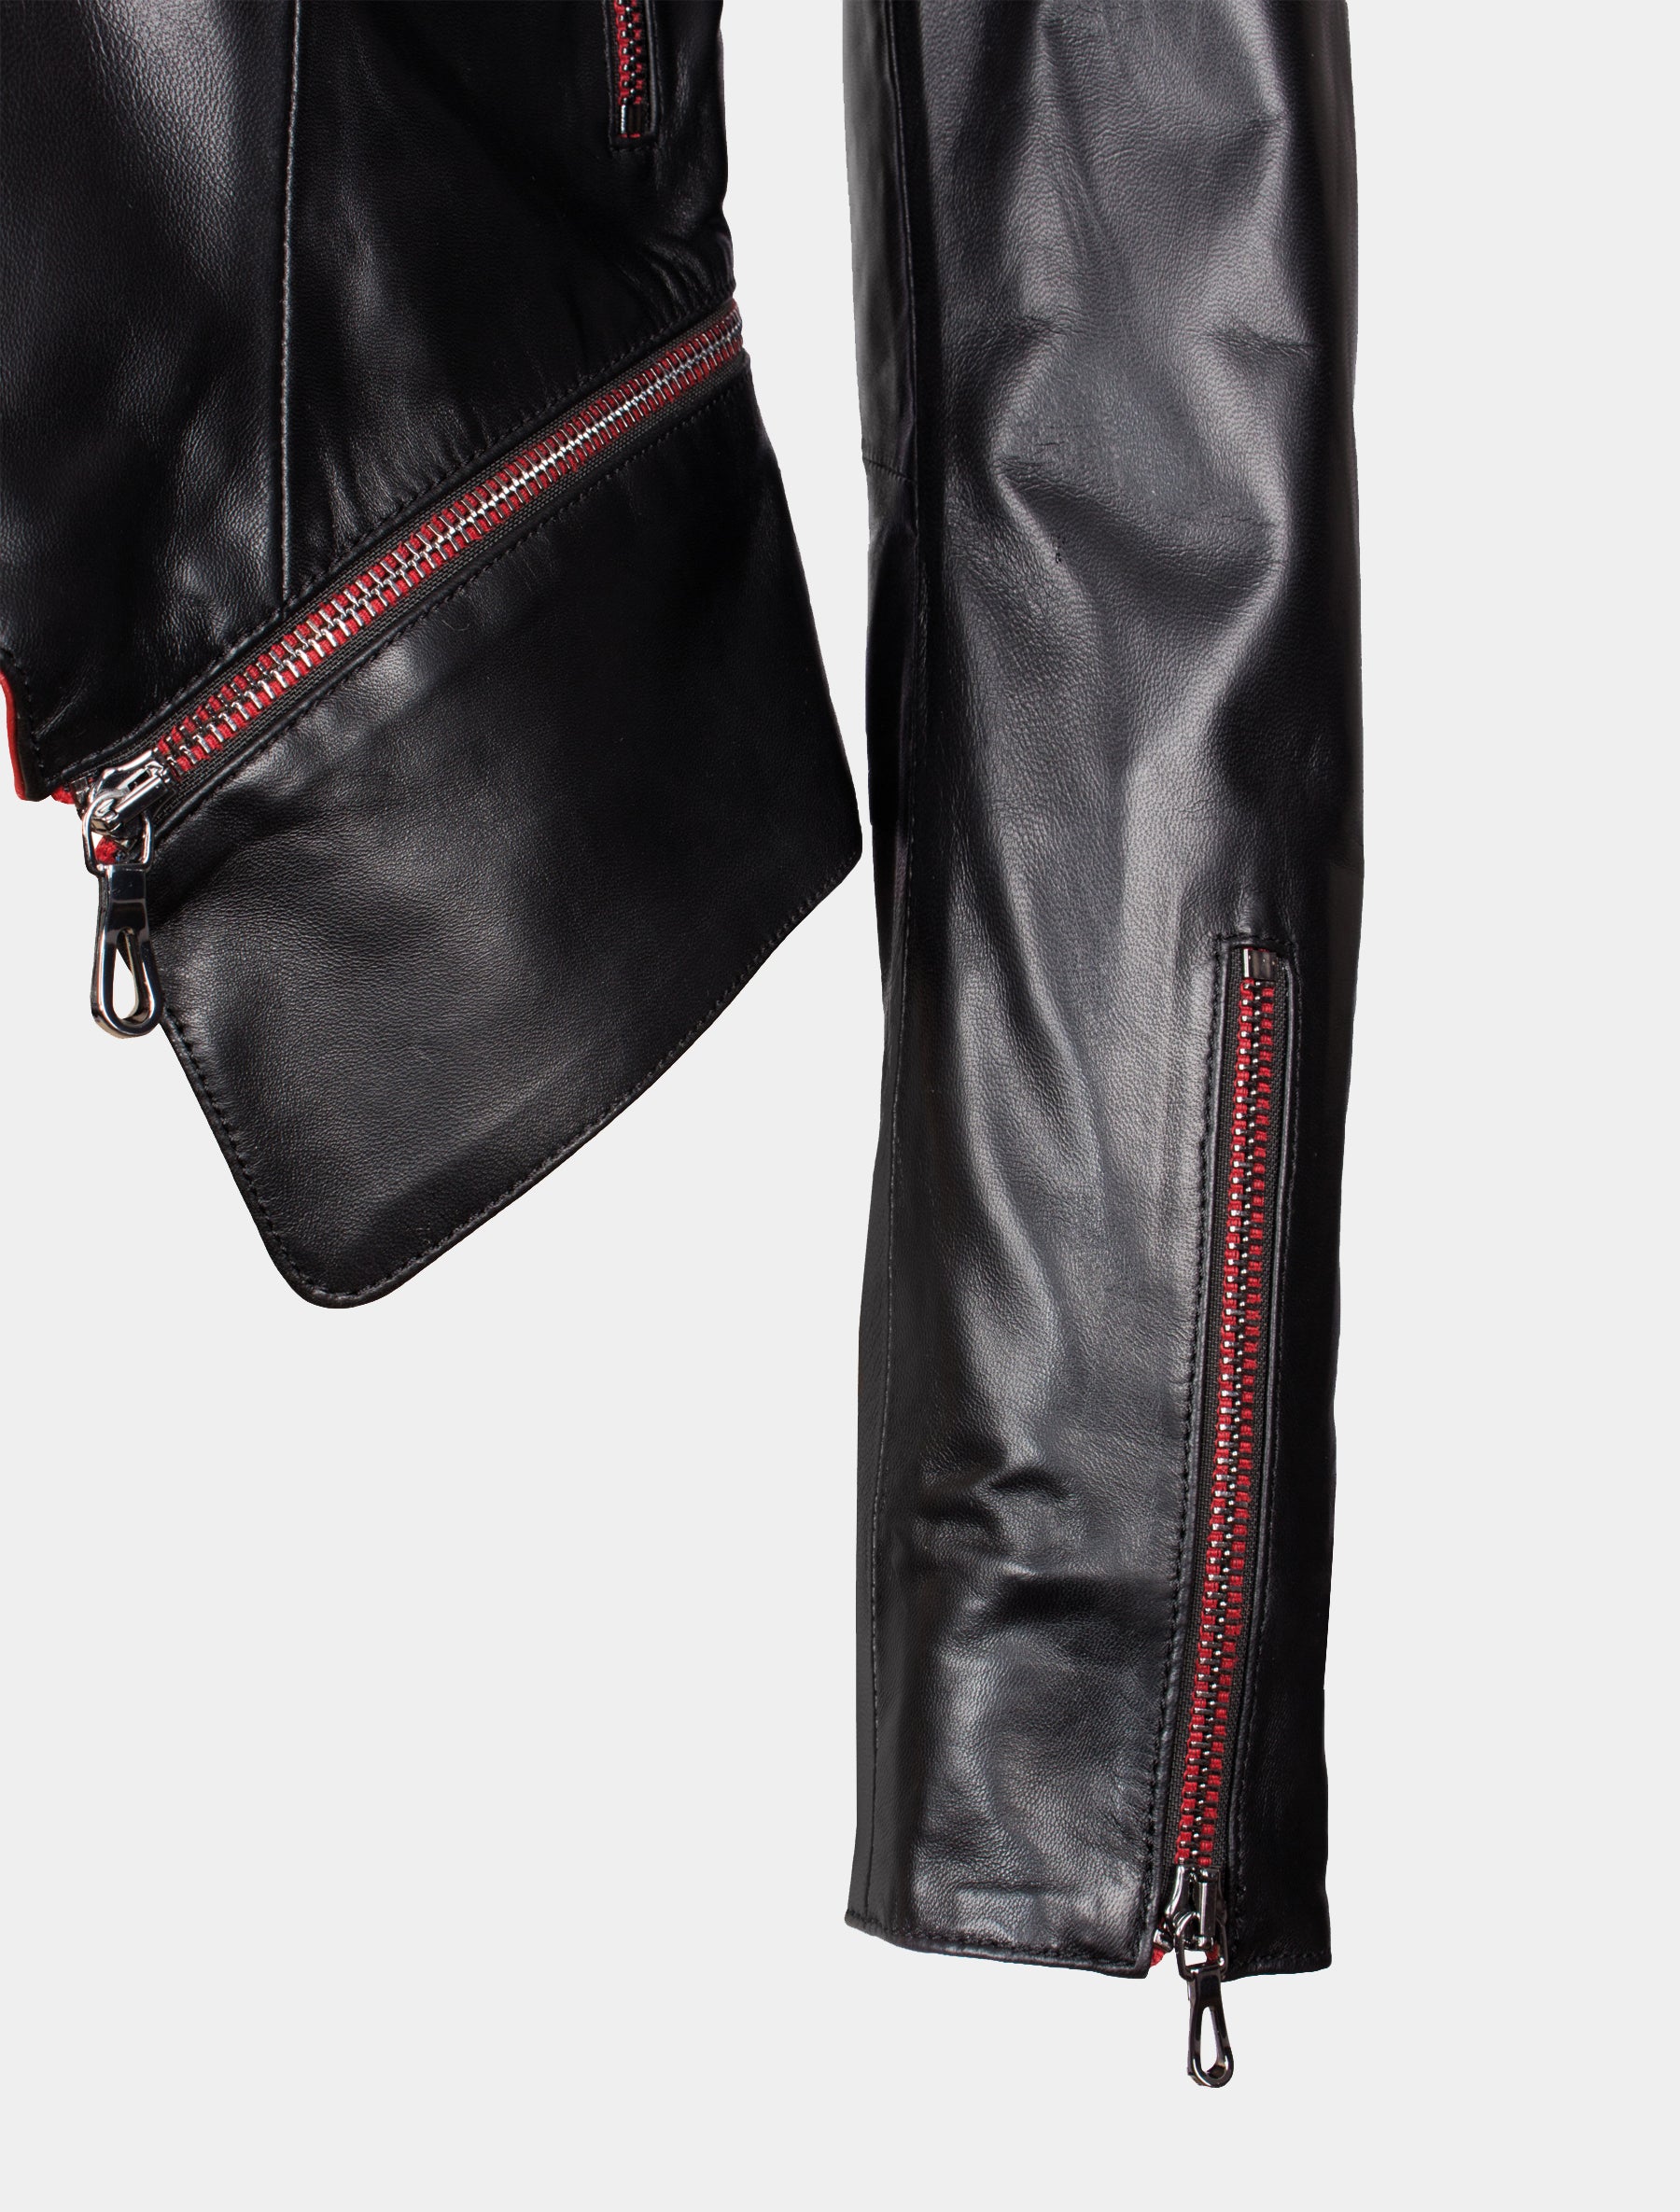 Kurze Damen Lederjacke mit roten Reißverschlüssen - Liya in schwarz / rot